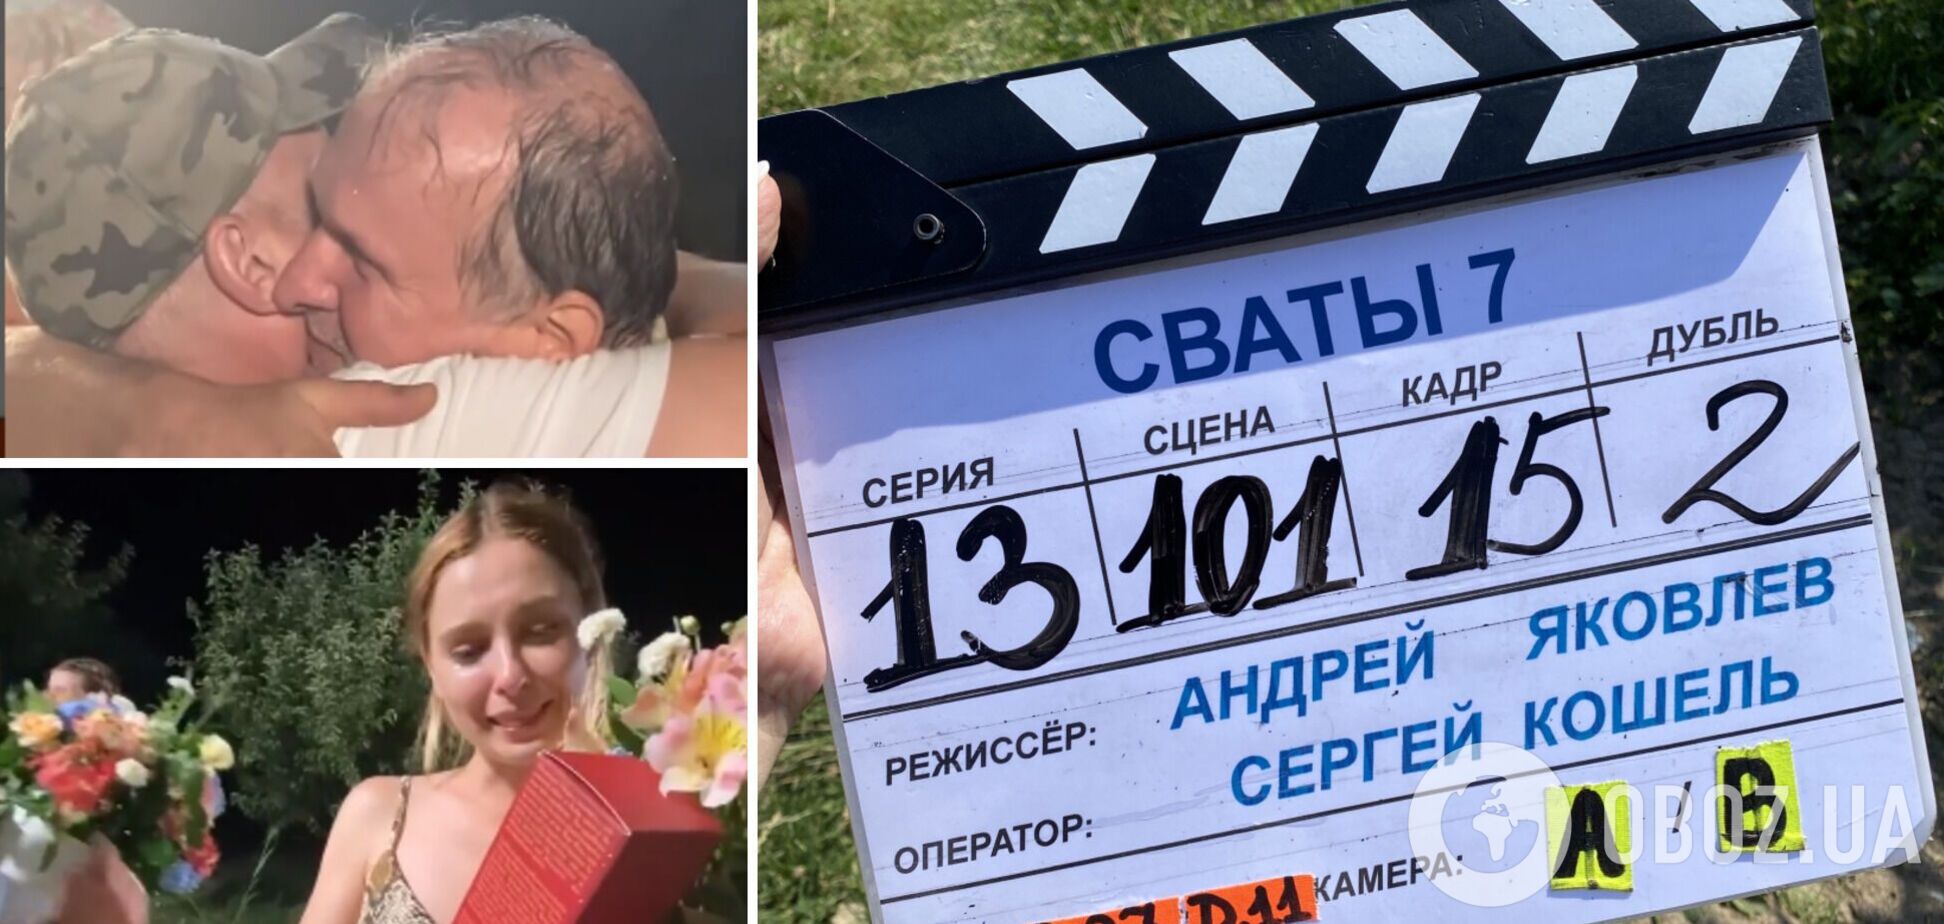 Кошмал и Кравченко плакали: видео со съемок 'Сватов 7' слили в сеть